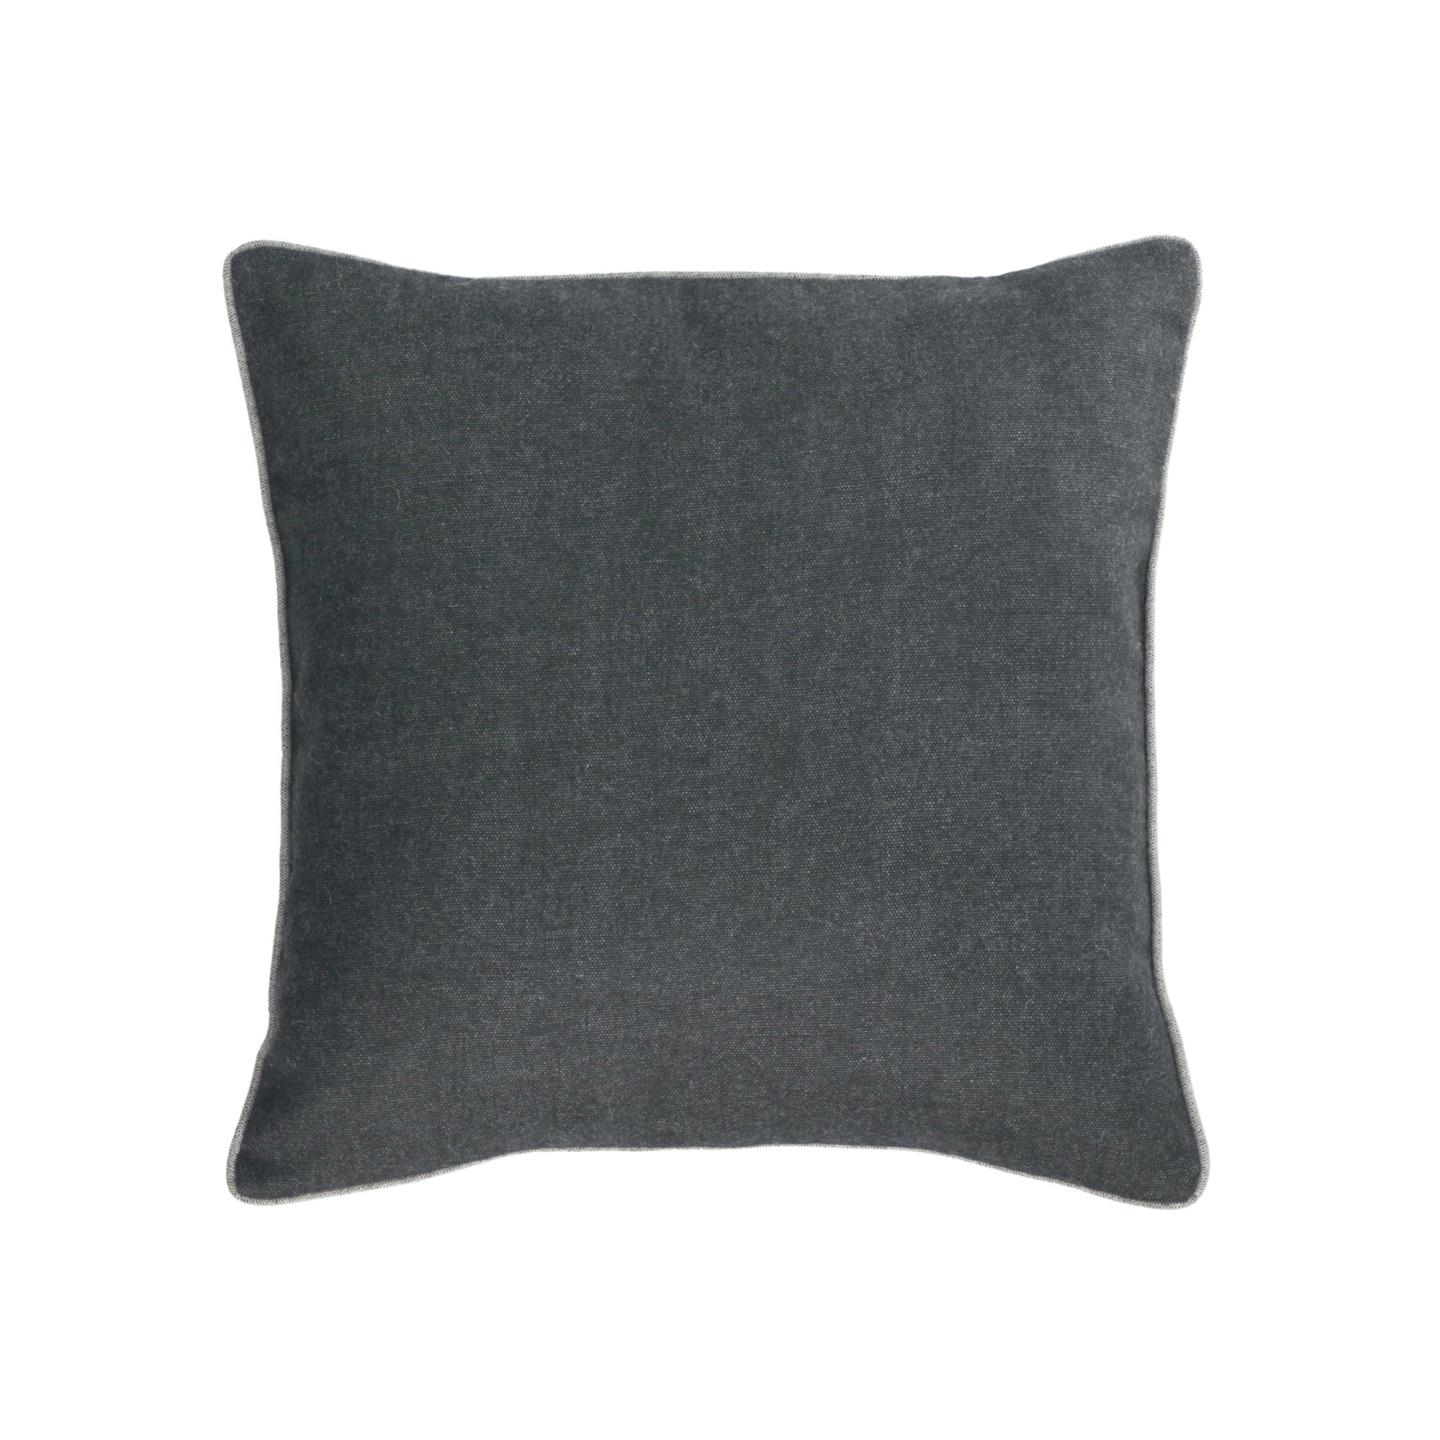 Чехол для подушки Alcara черный с серой каймой 45 x 45 см